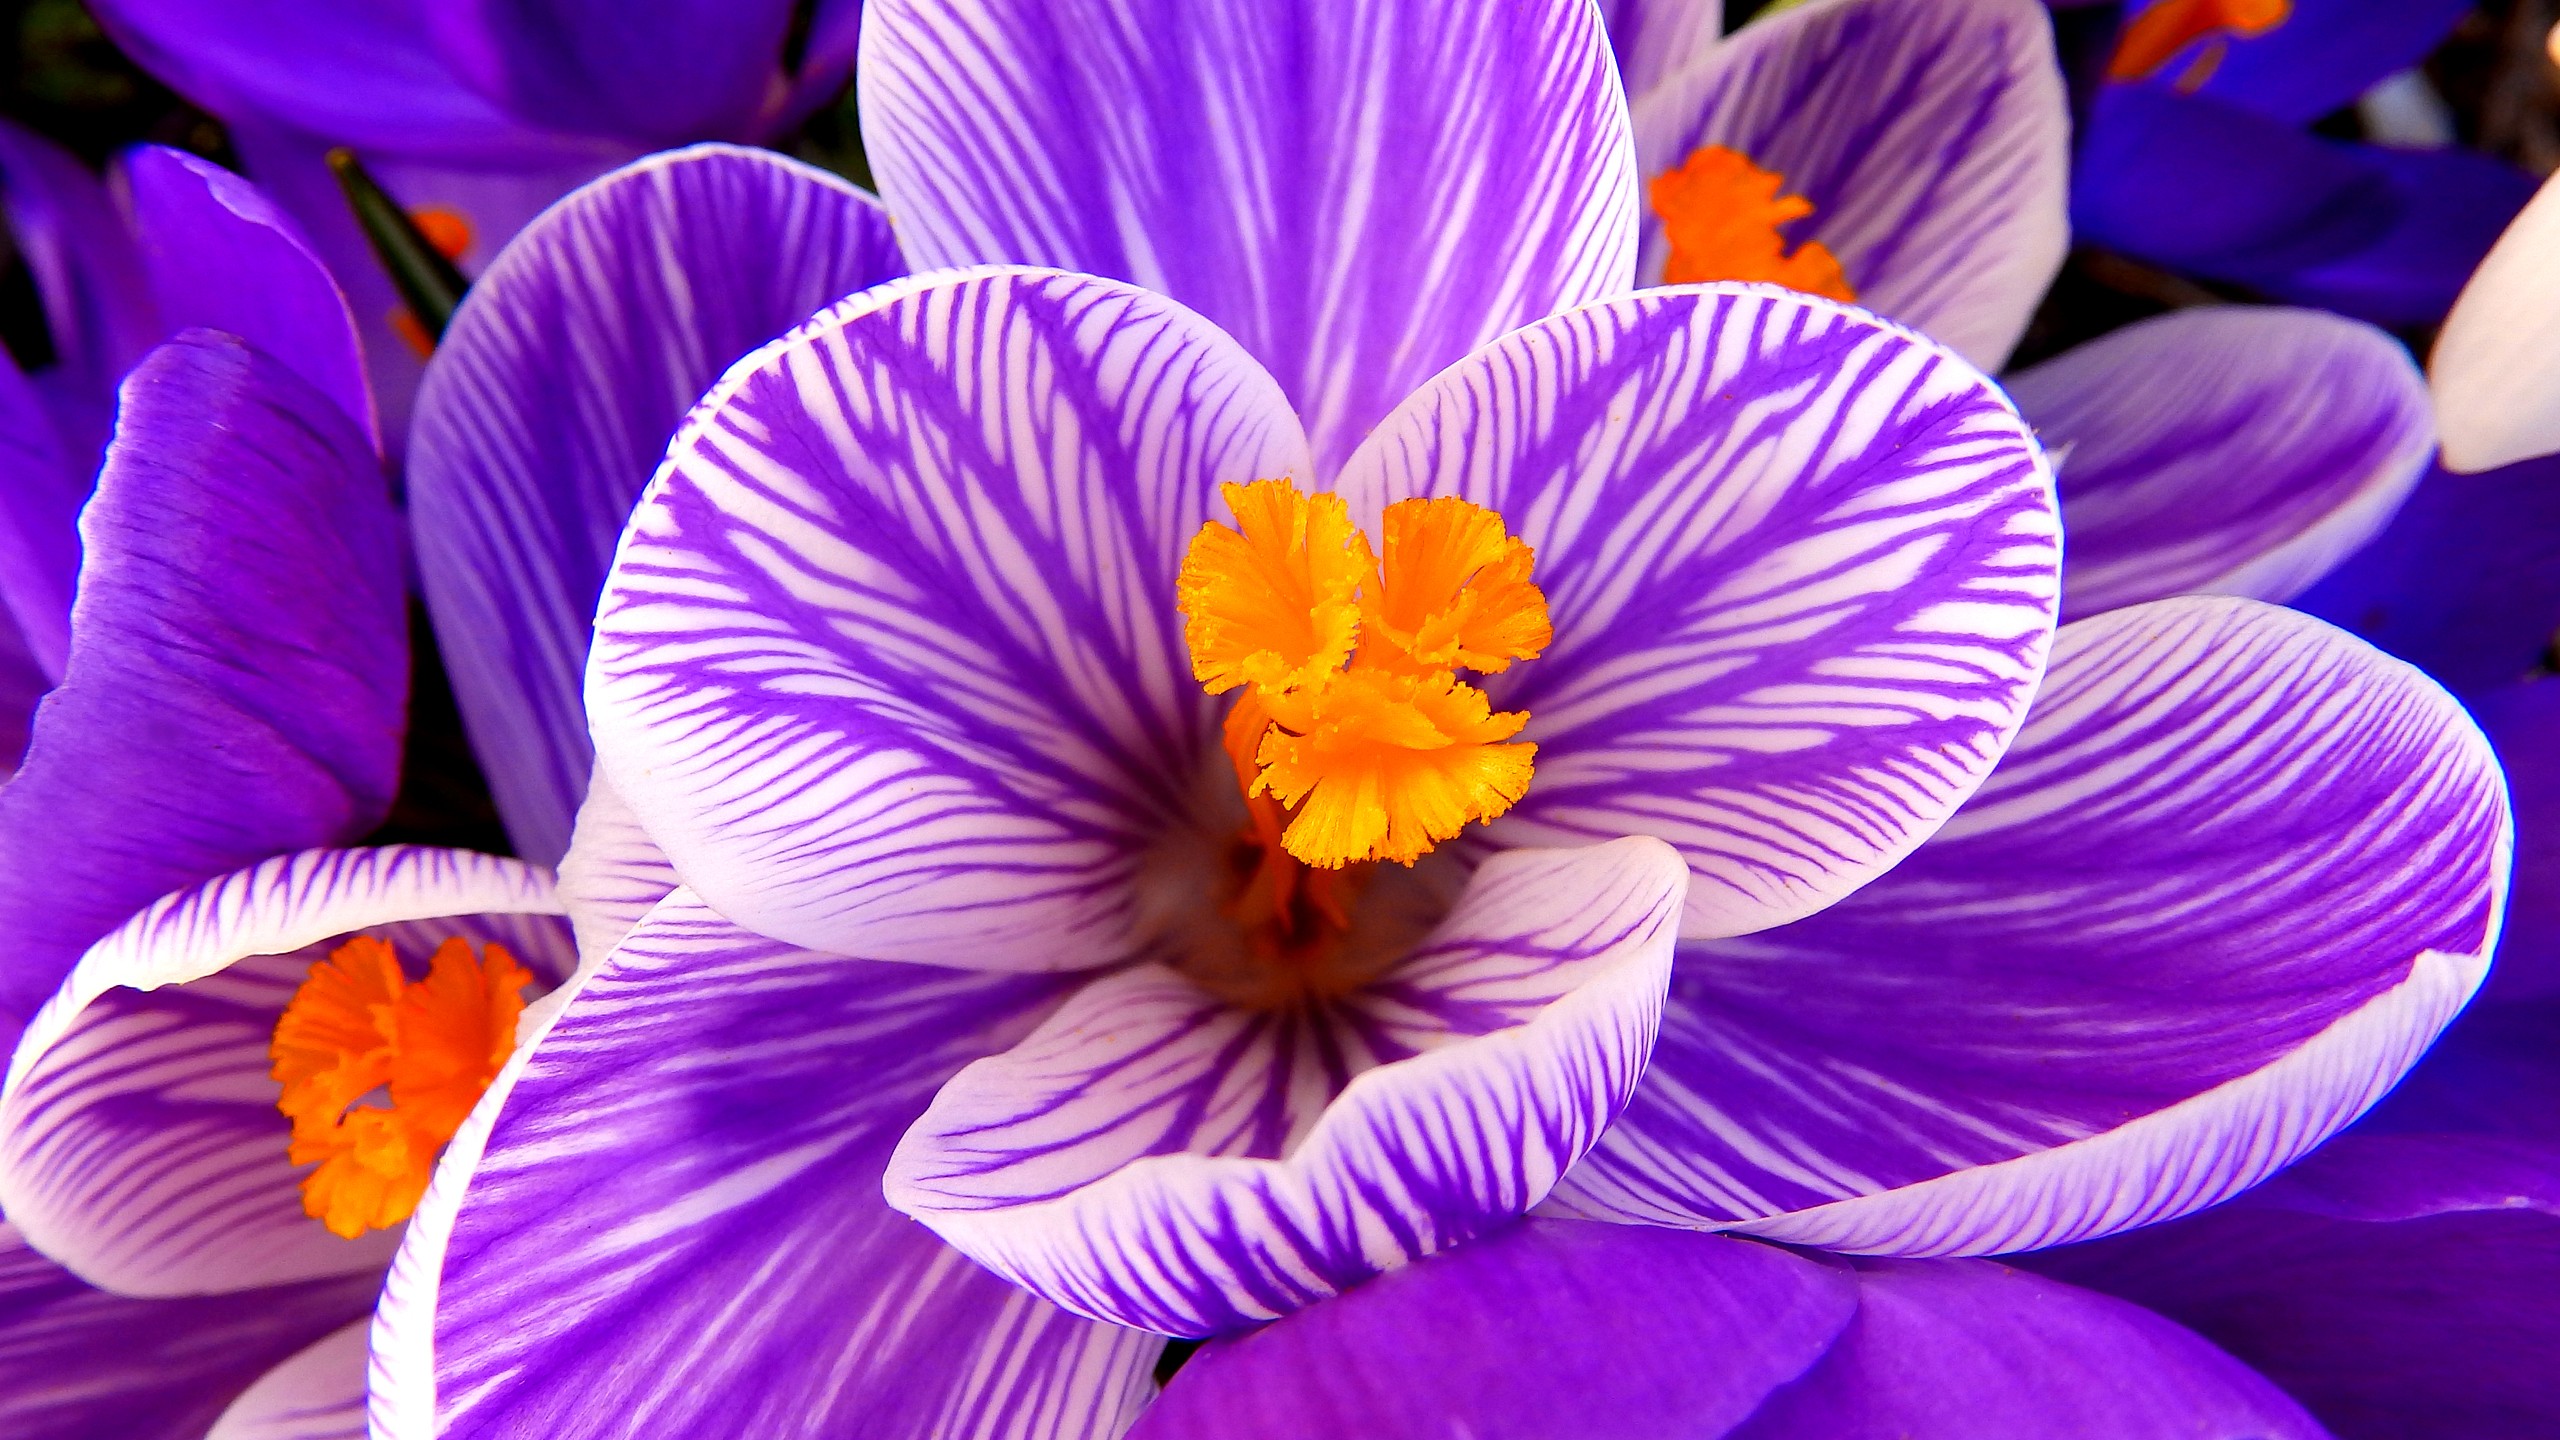 Wallpaper Crocus flower, Purple flower, HD, Flowers, #6730